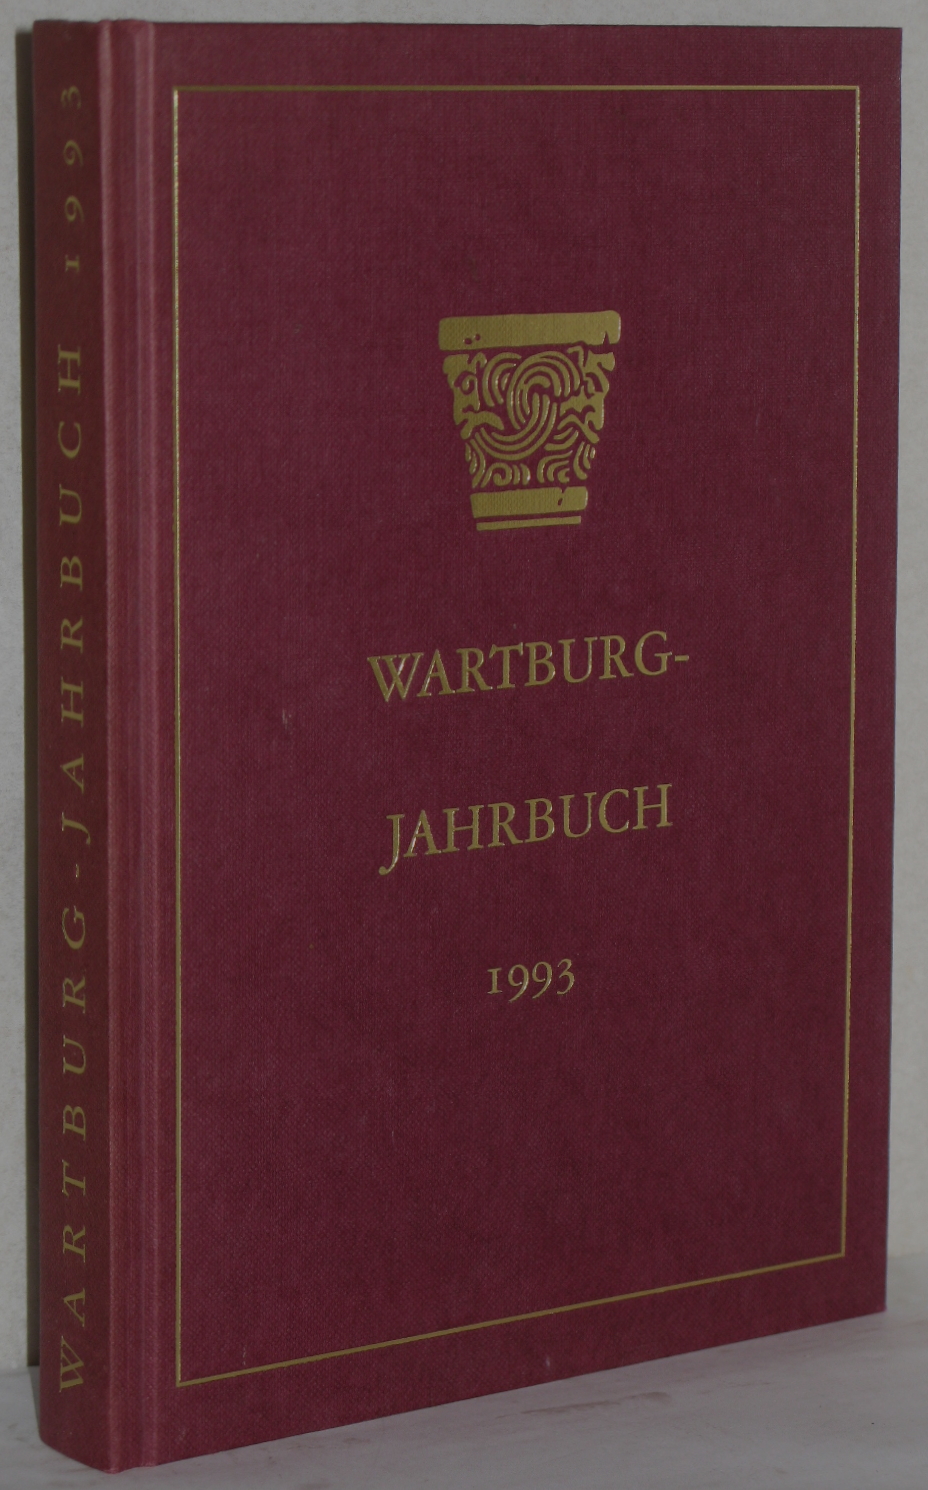 Wartburg-Jahrbuch 1993. Herausgegeben von der Wartburg-Stiftung Eisenach. (NF 2. Jg.). M. Abb. u. 1. gef. Beilage. - Wartburg-Stiftung